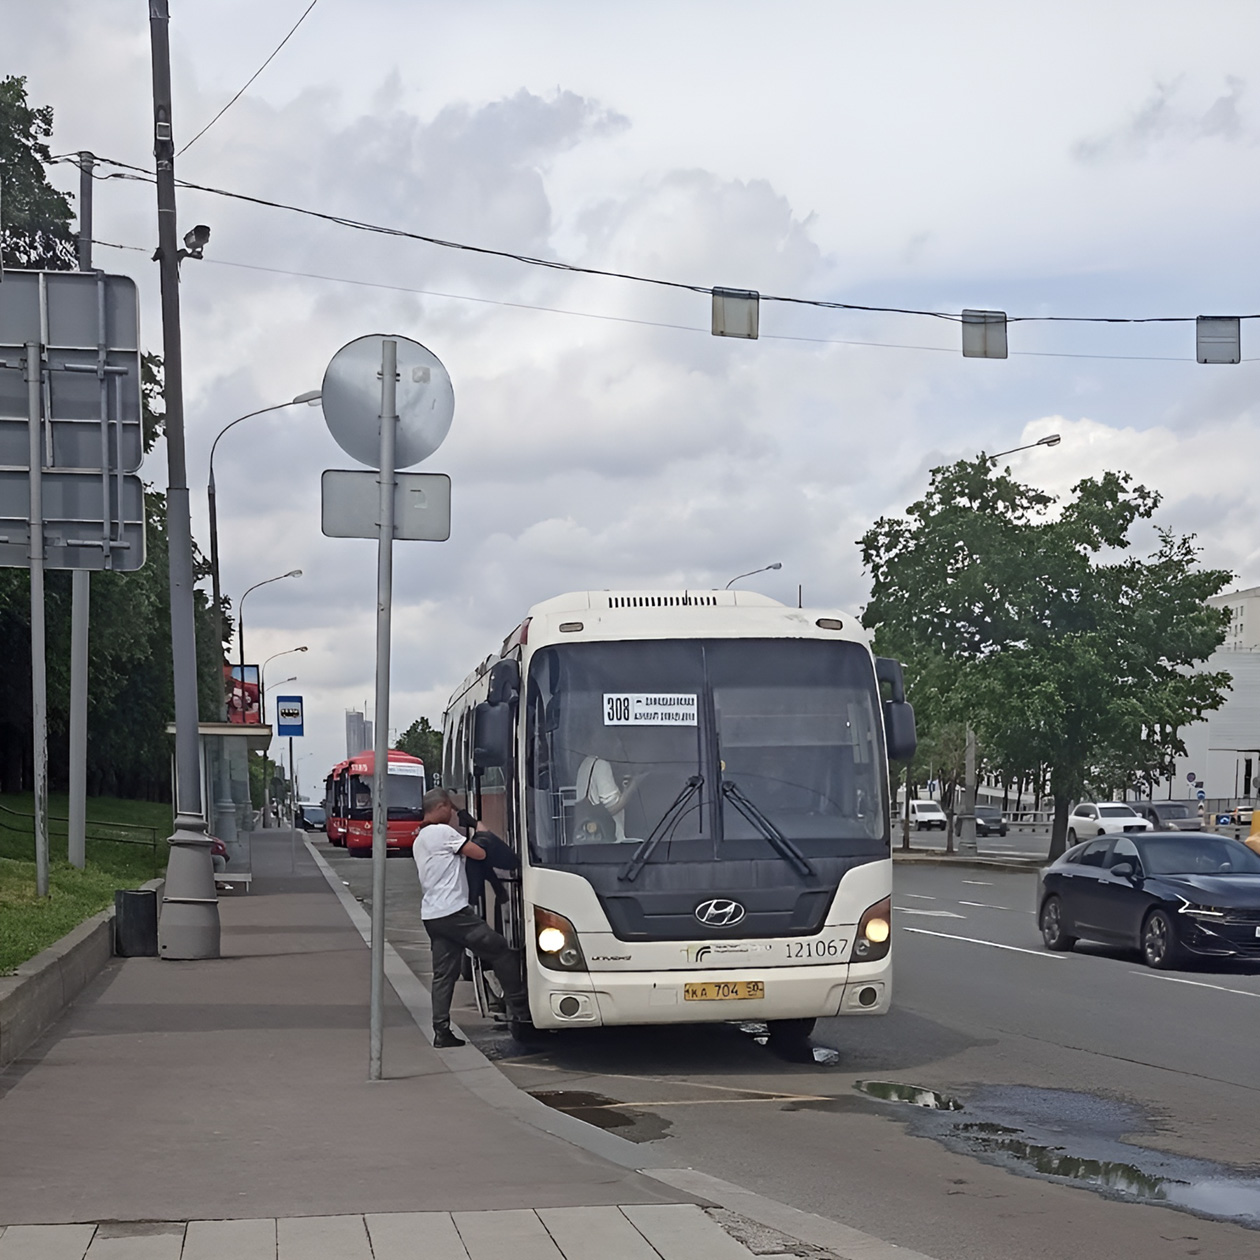 Остановка автобуса № 308 находится на выходе из метро «Домодедовская»